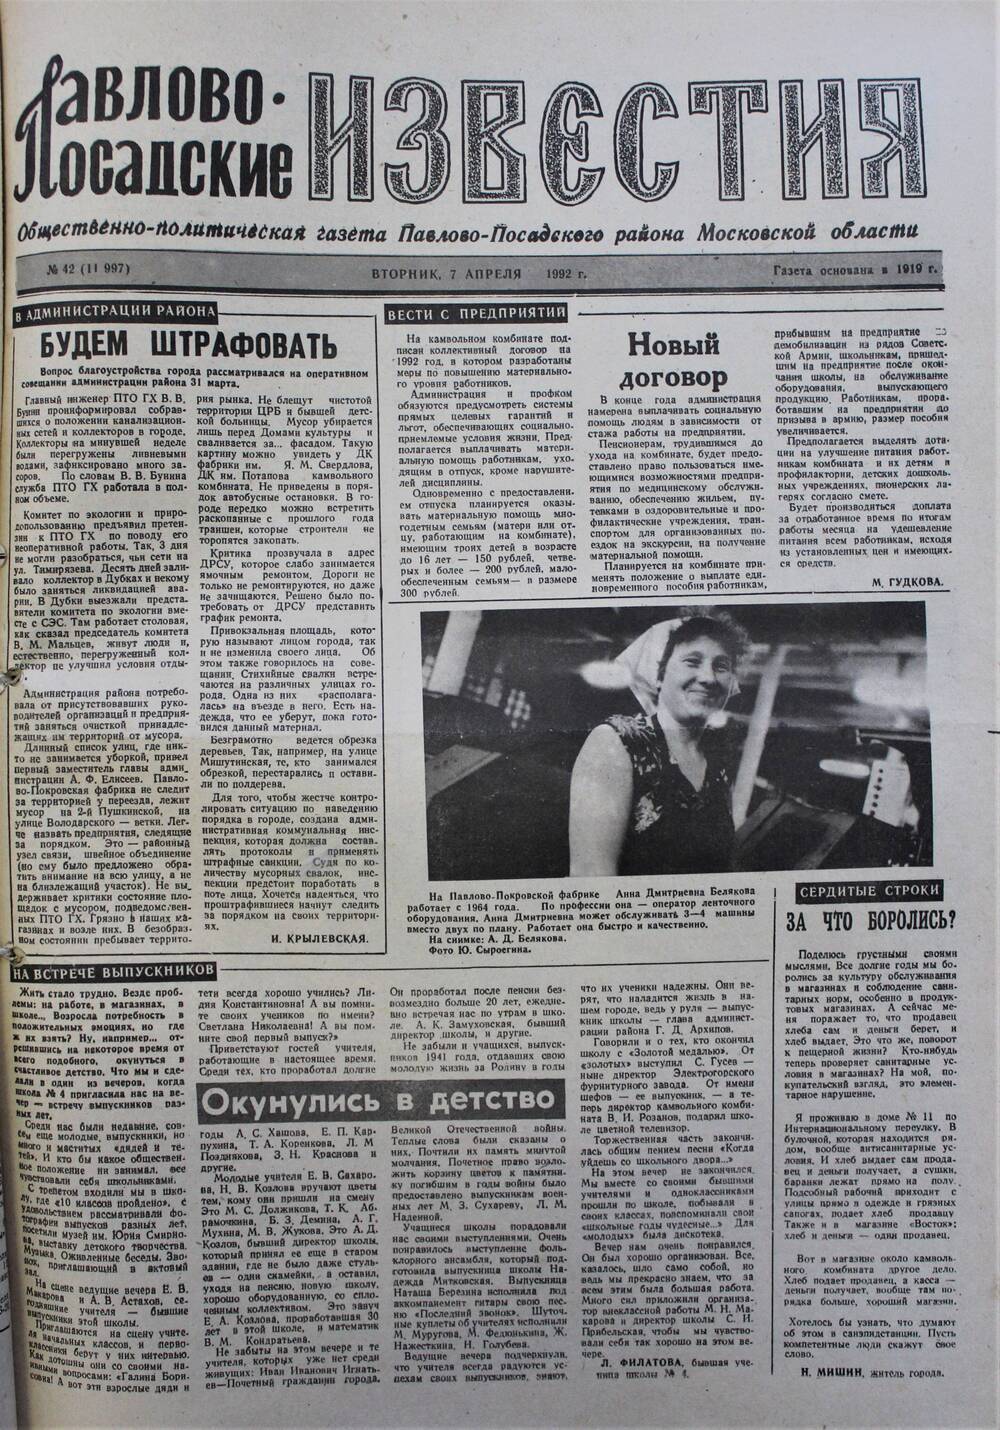 Газета Павлово-Посадские известия № 42 (11997)  от 7 апреля 1992 г.